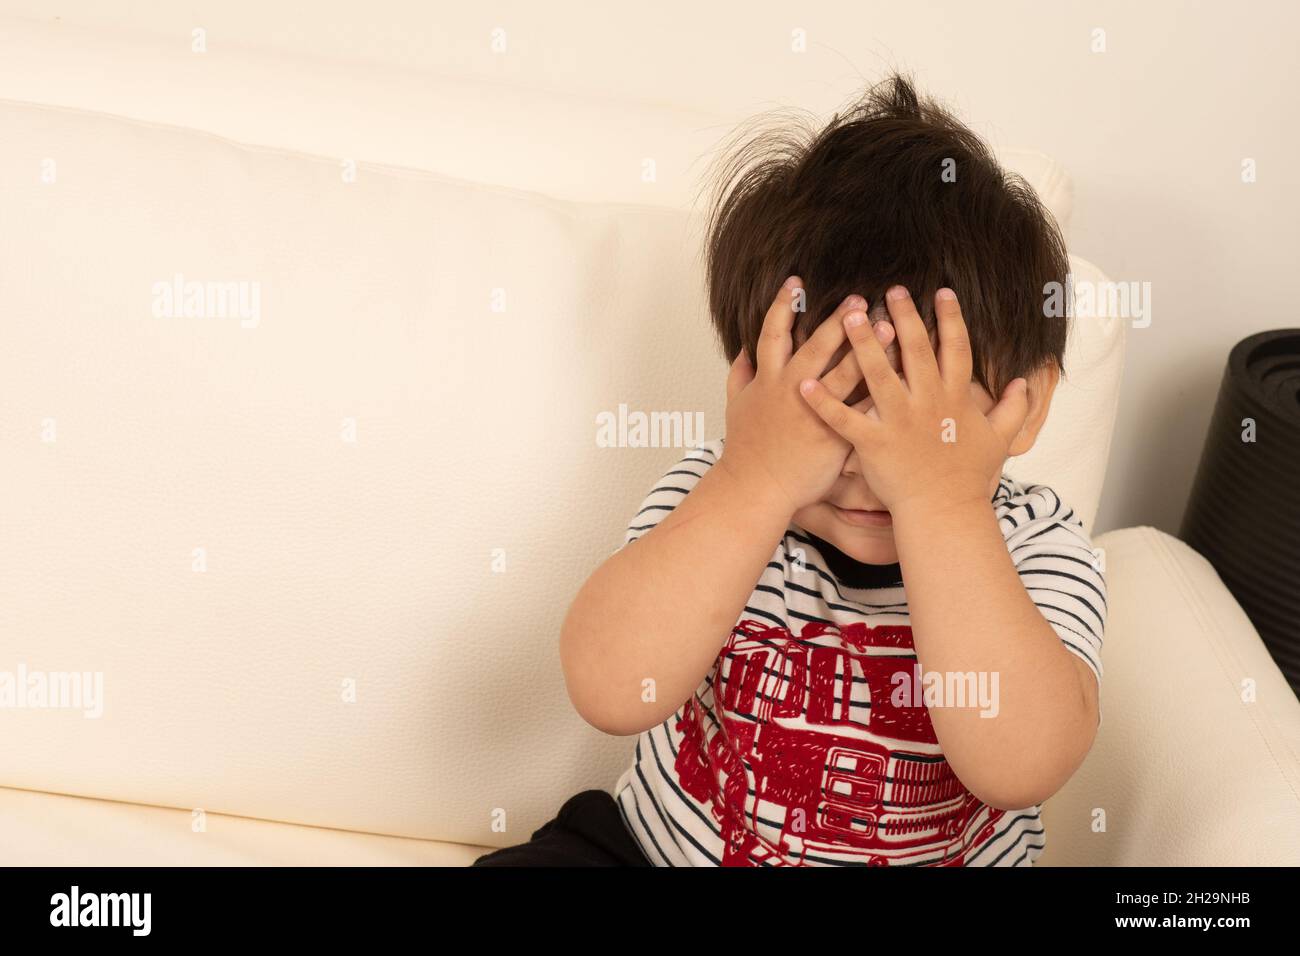 1 de 2 Niño de dos años escondido detrás de sus manos peek boo Foto de stock